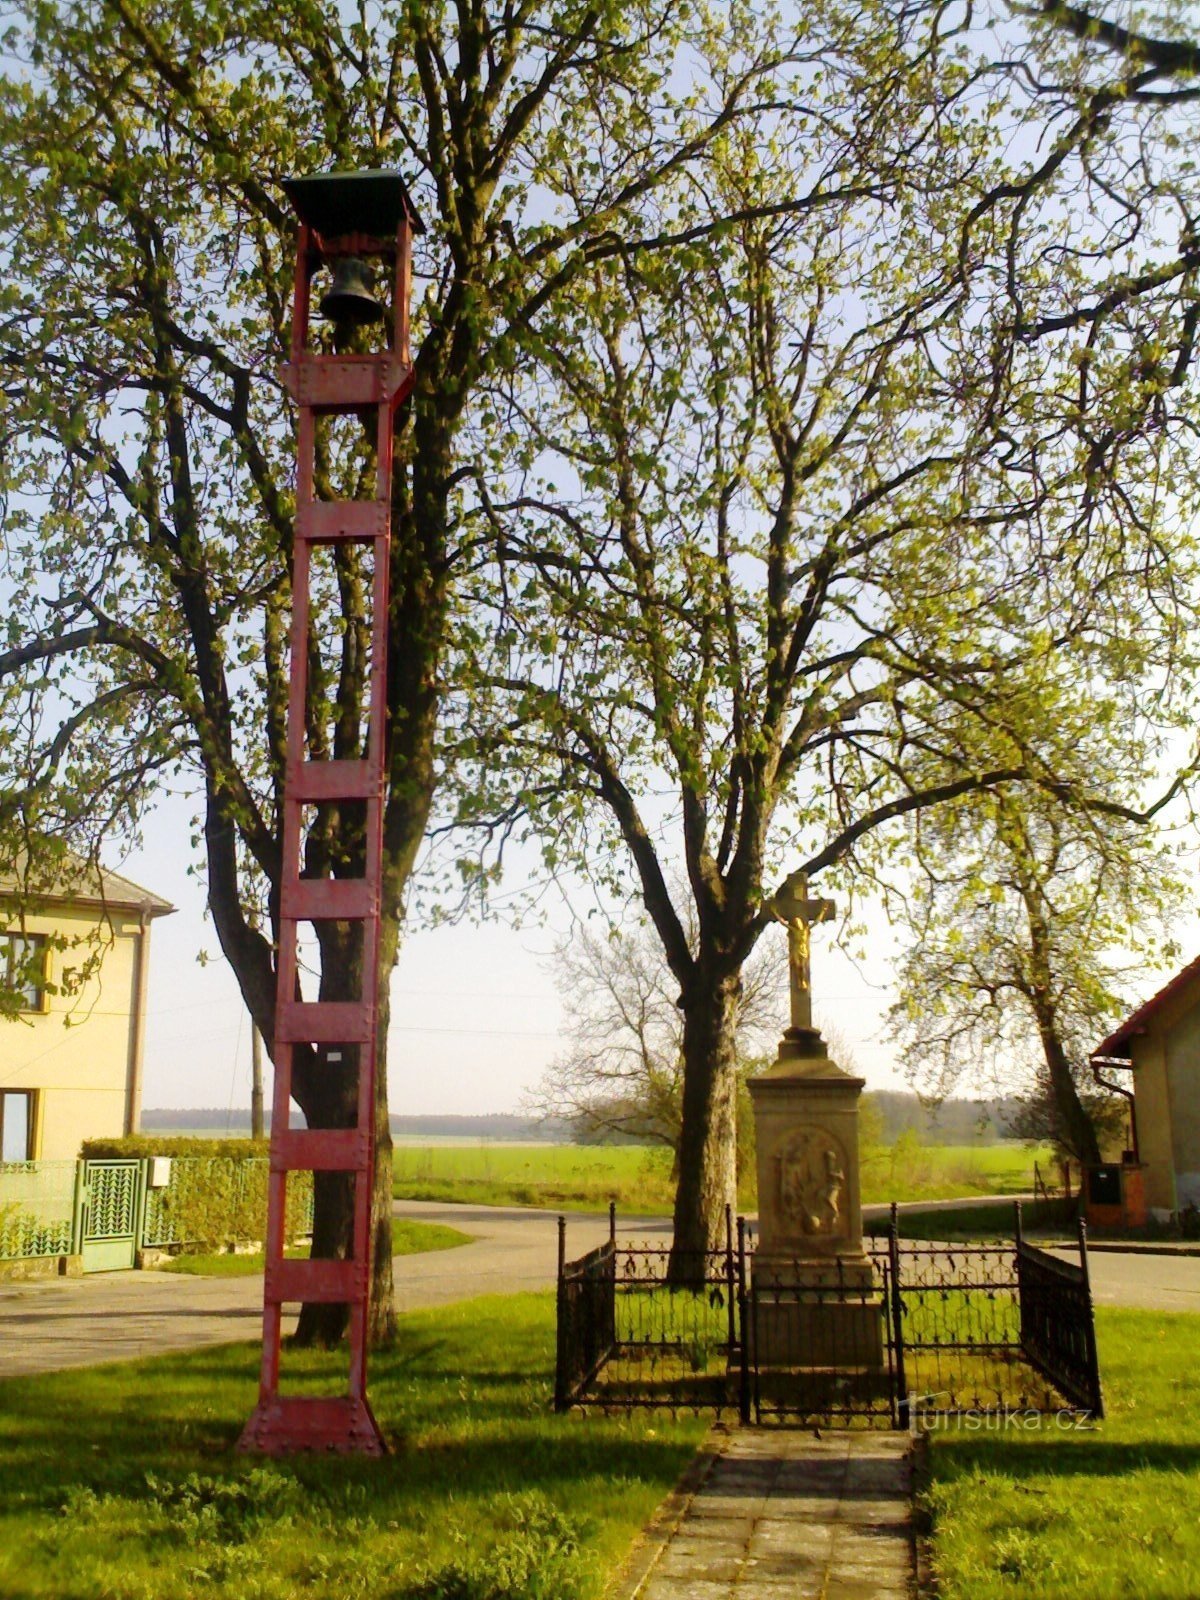 Piscina - monumento de la crucifixión con una campana